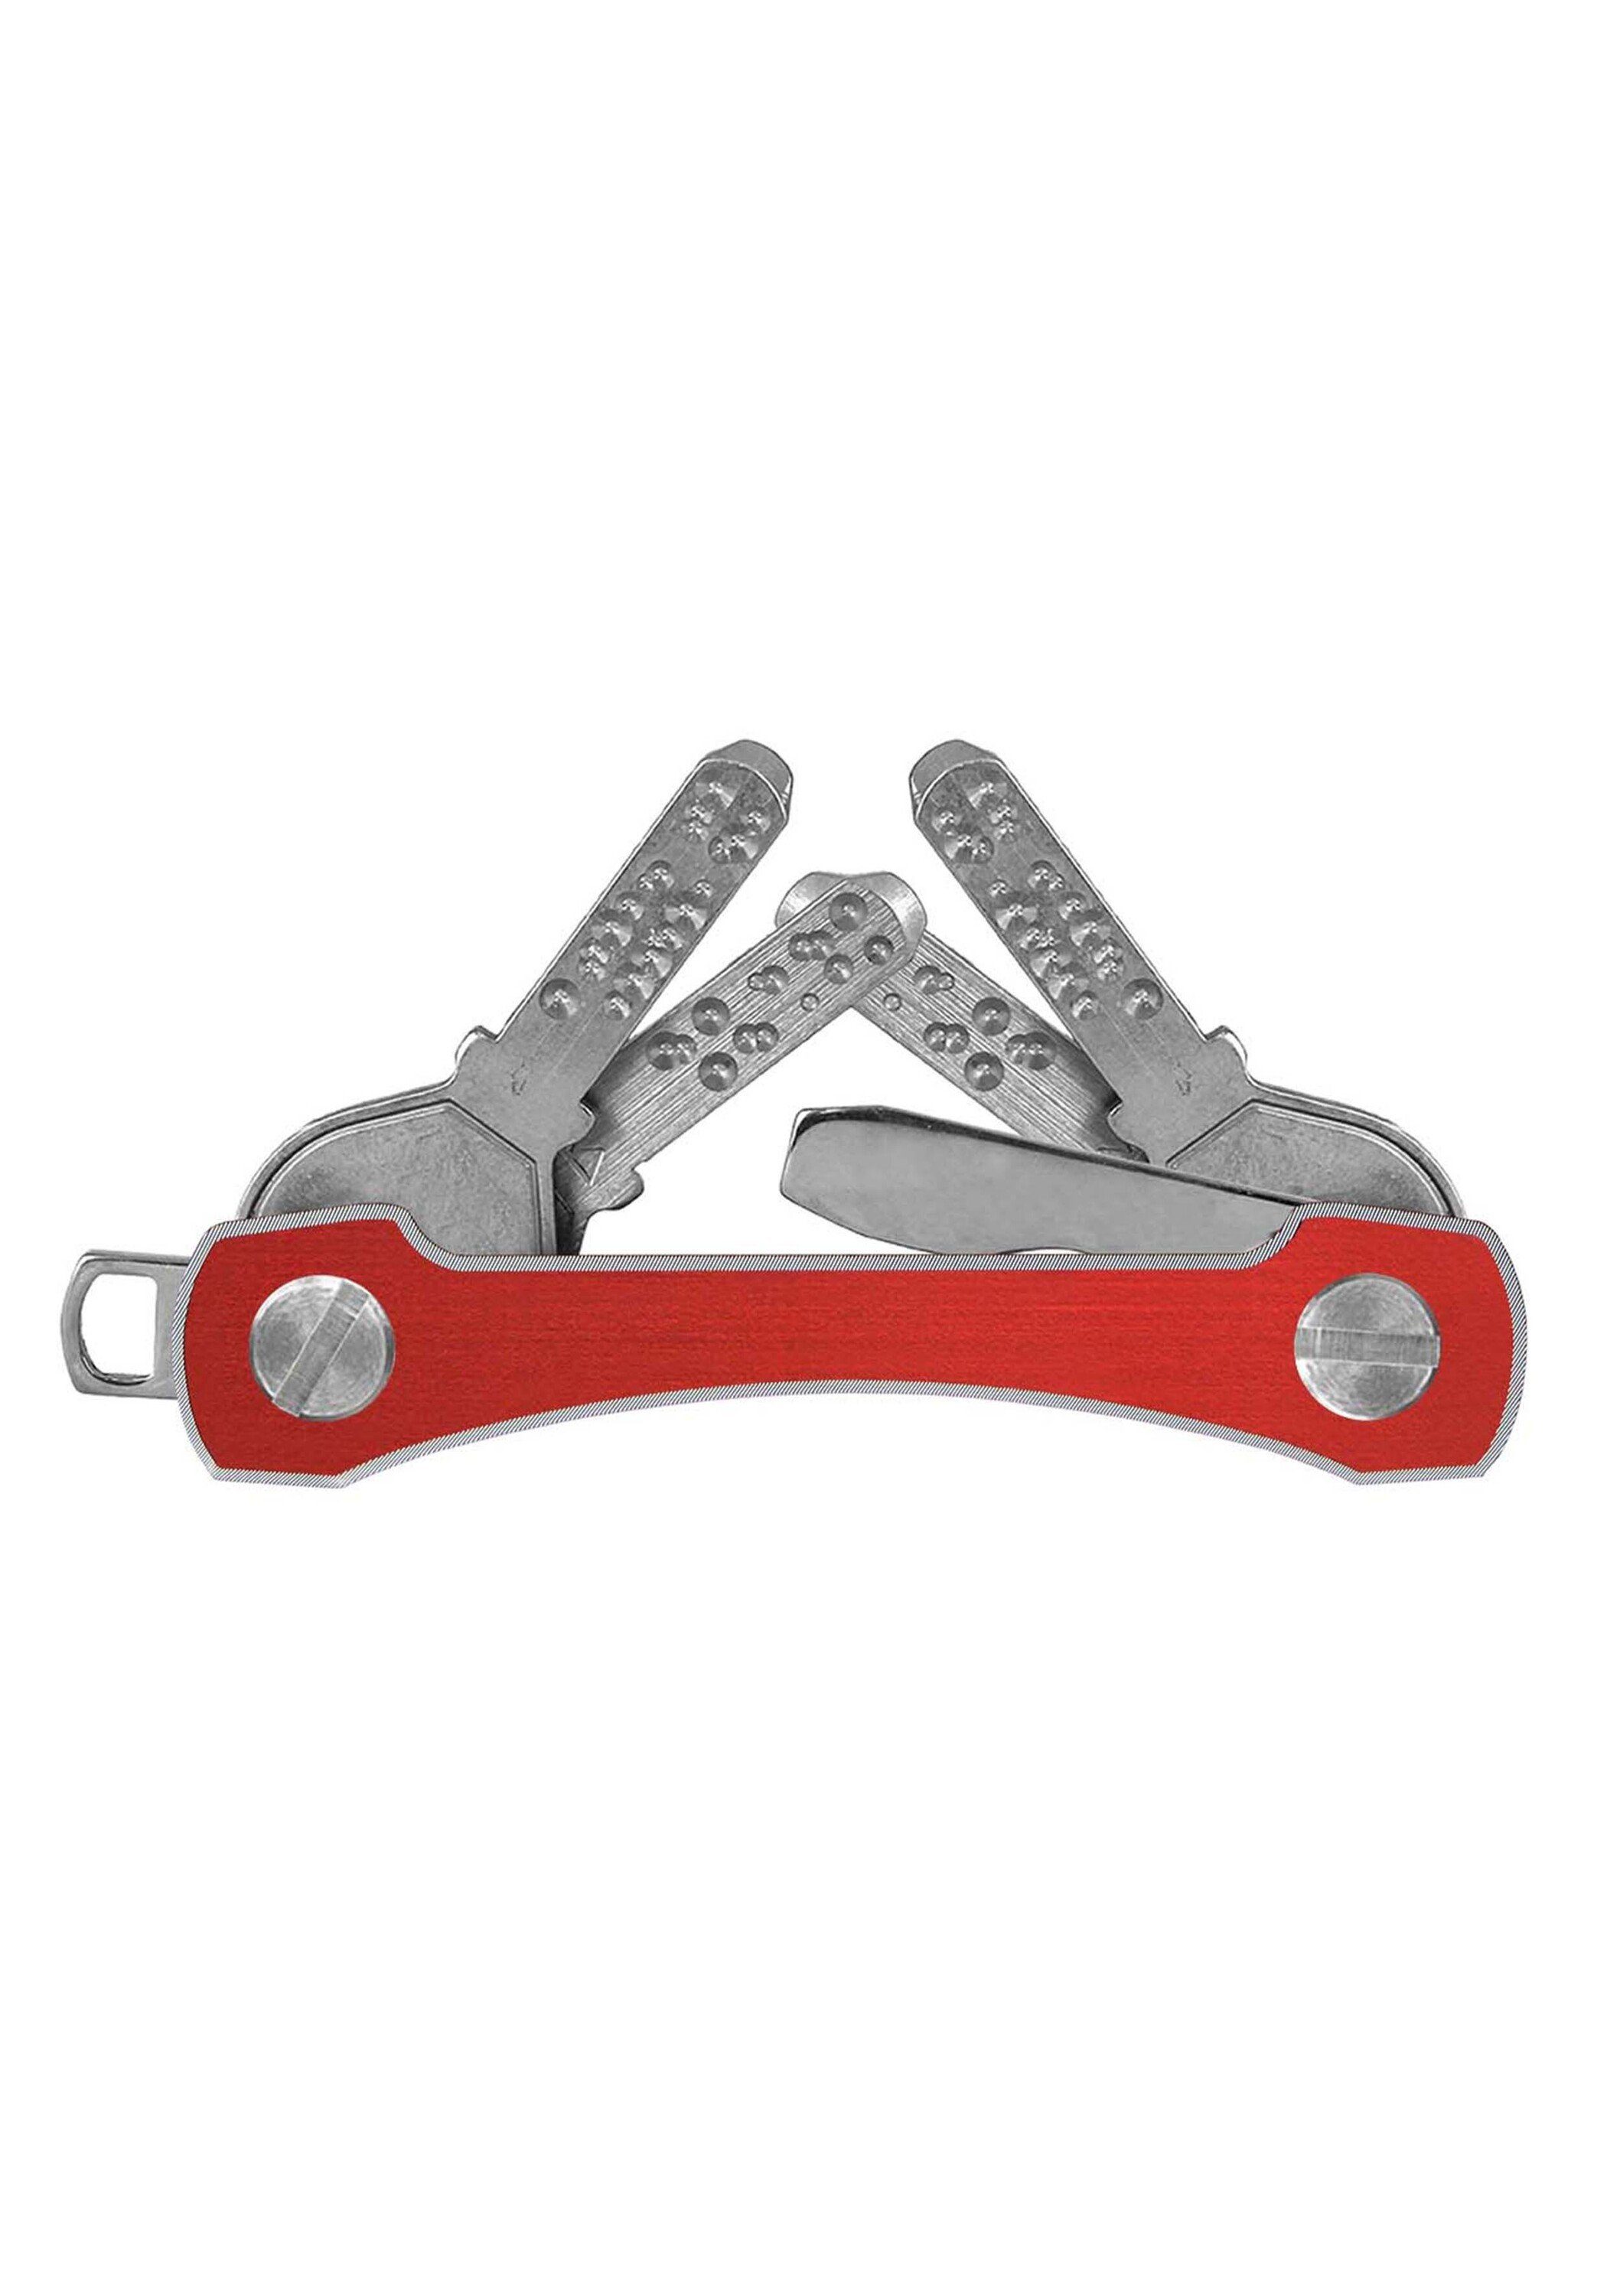 SWISS S2, frame Schlüsselanhänger Aluminium rot keycabins made